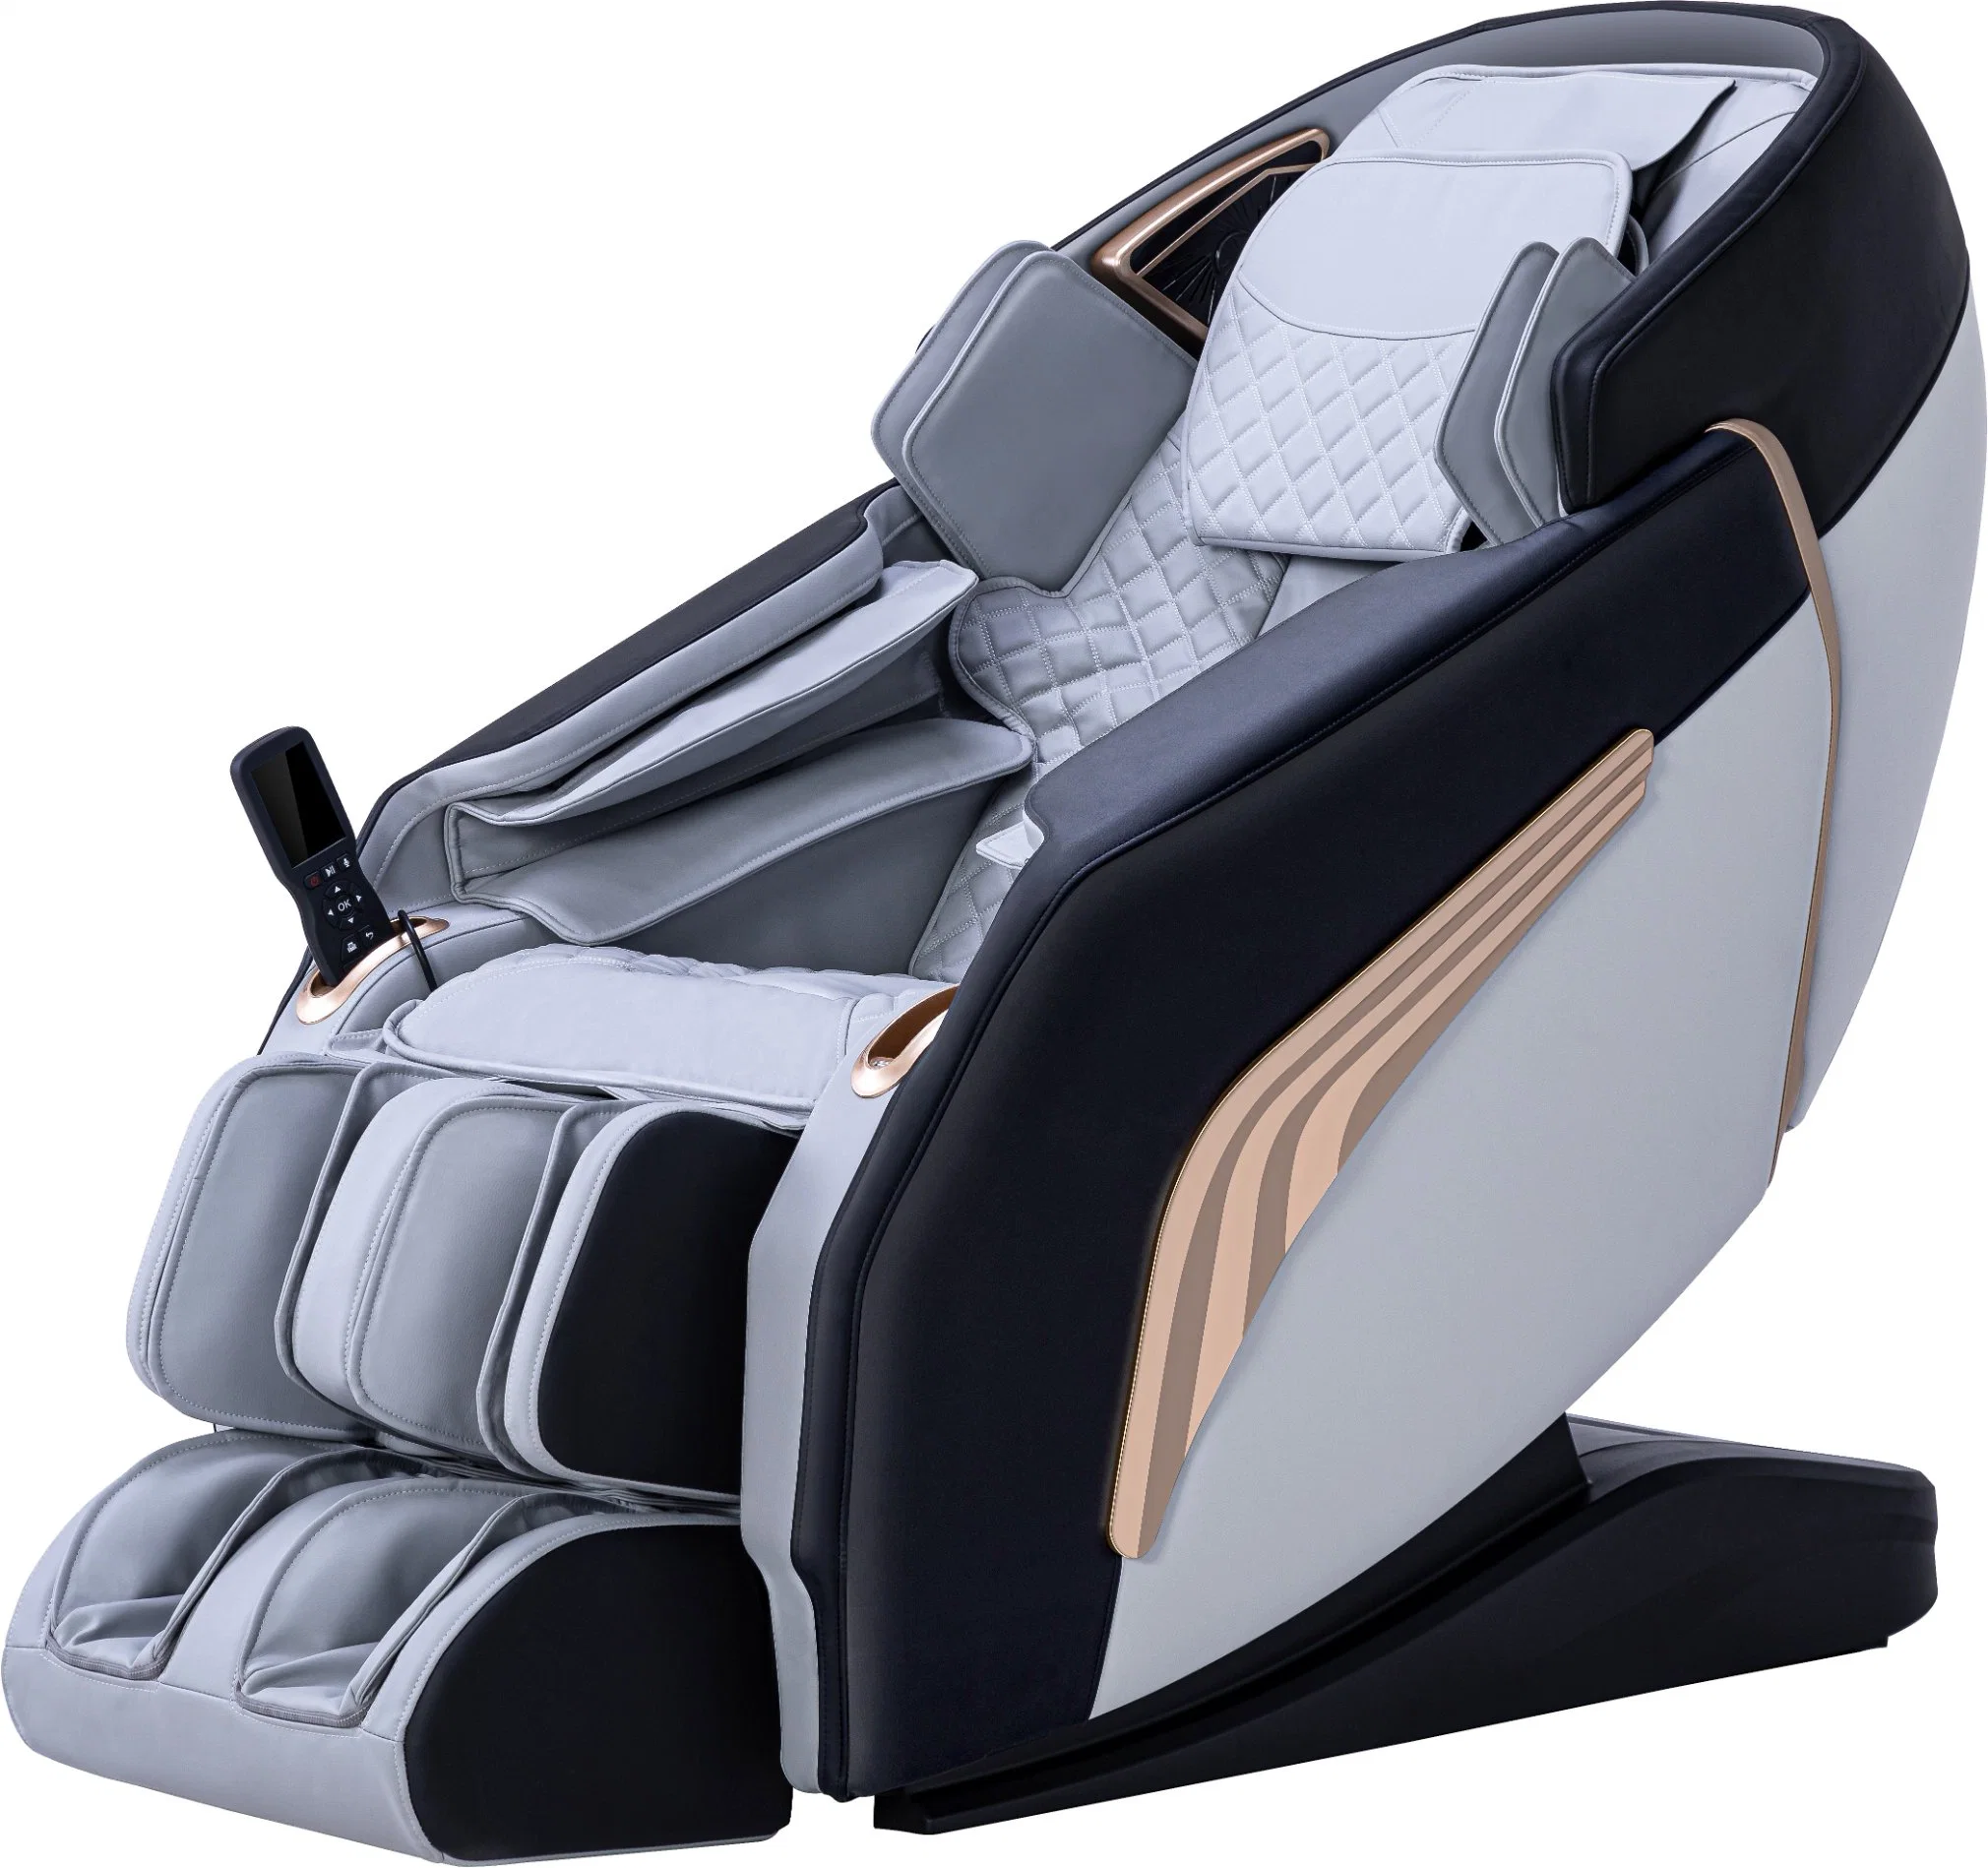 El Shiatsu eléctrico infrarrojo profundo los equipos de calefacción eléctrica vibratoria sillón de masaje 4D